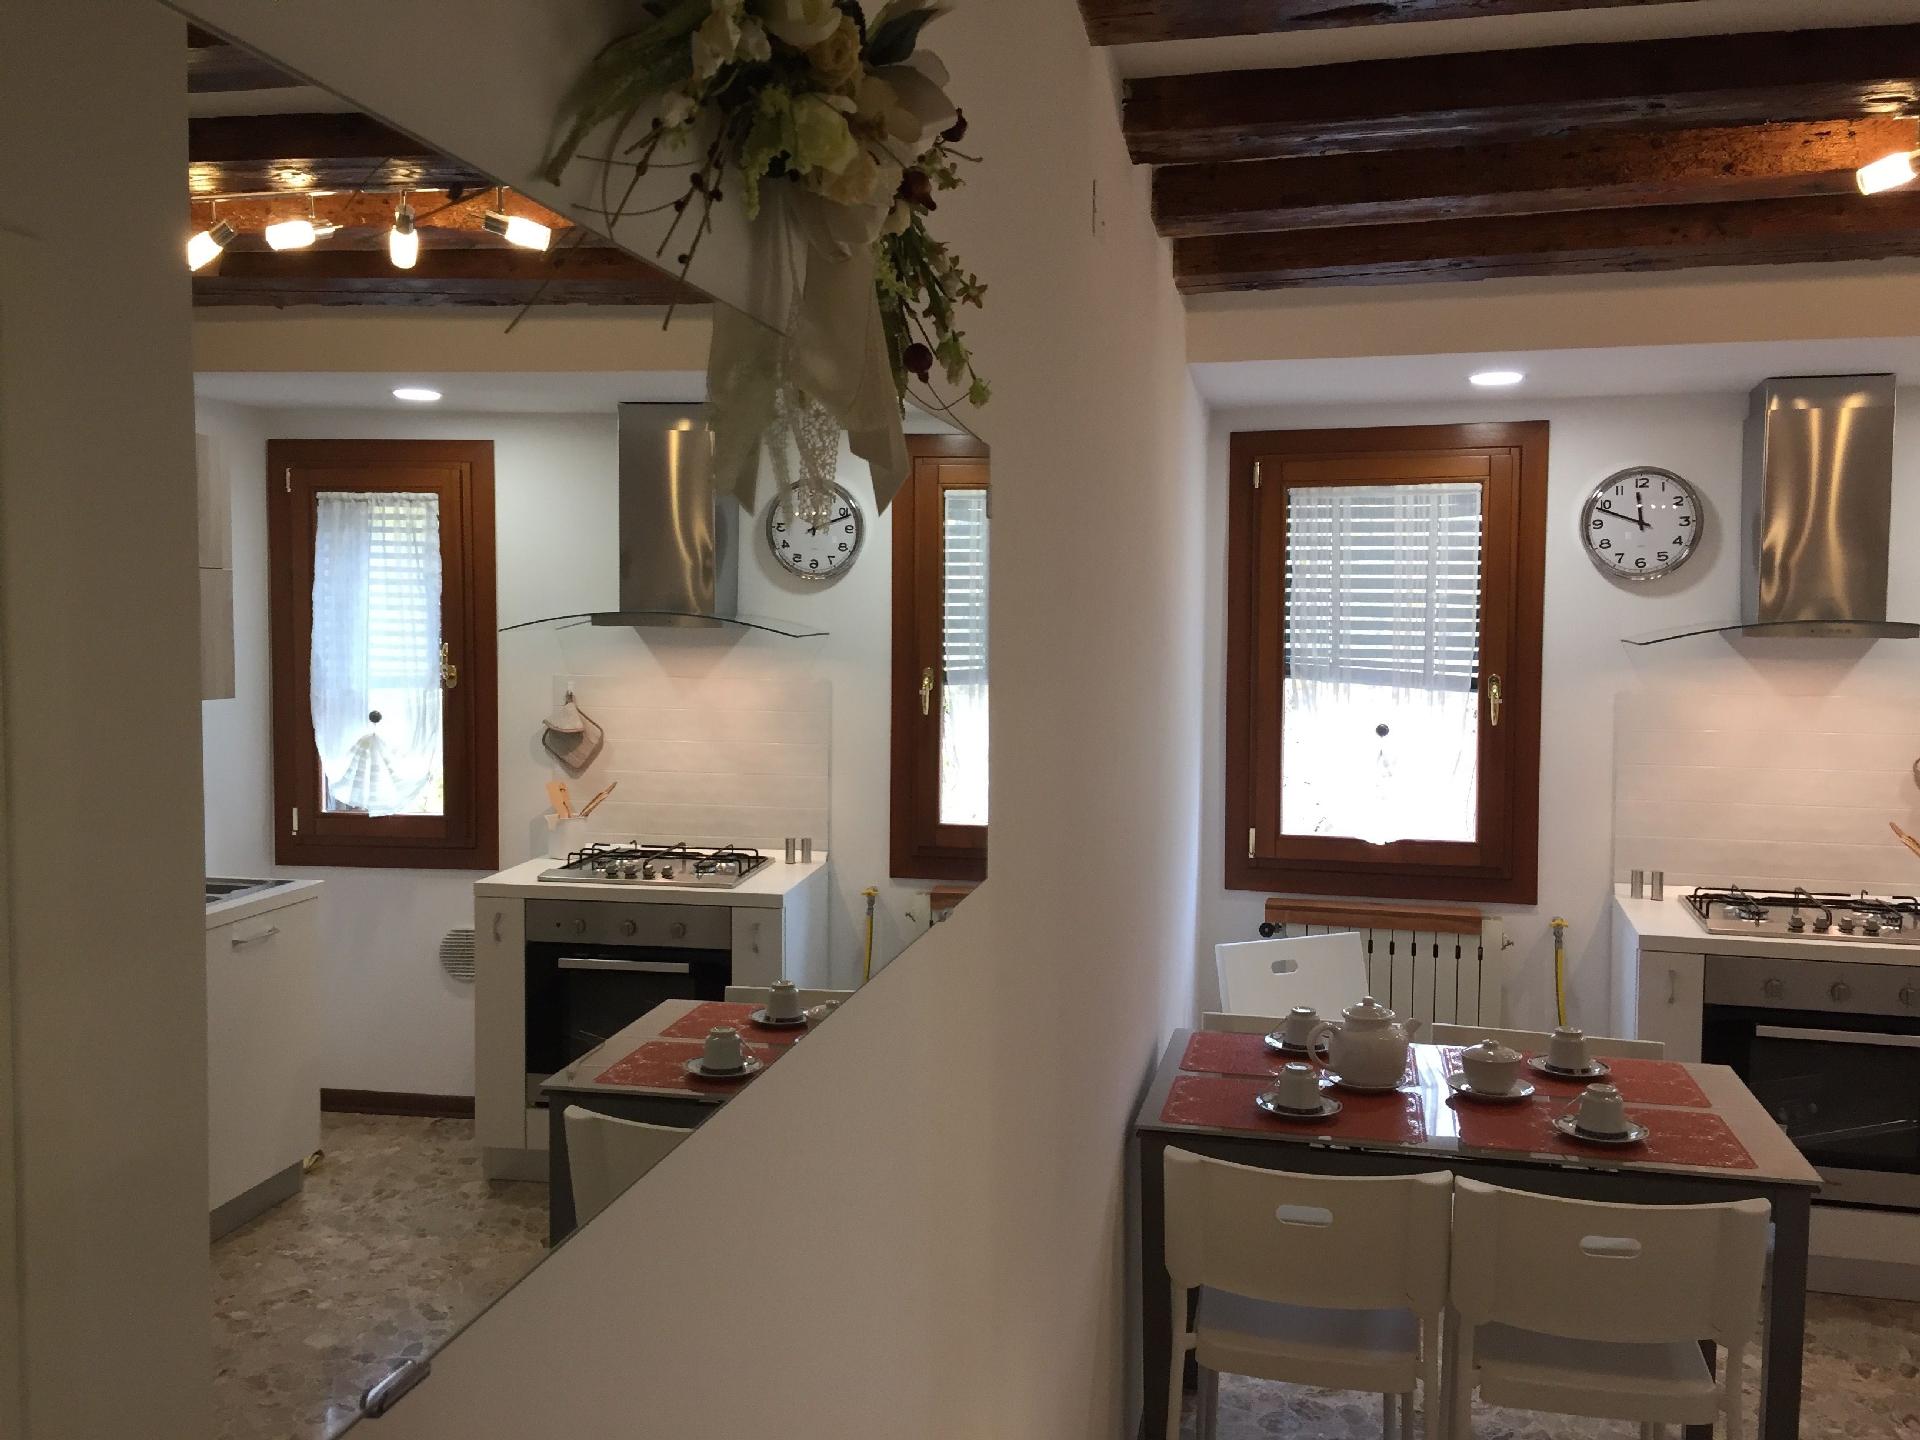 Ferienwohnung für 4 Personen ca. 90 m² i Ferienwohnung in Italien